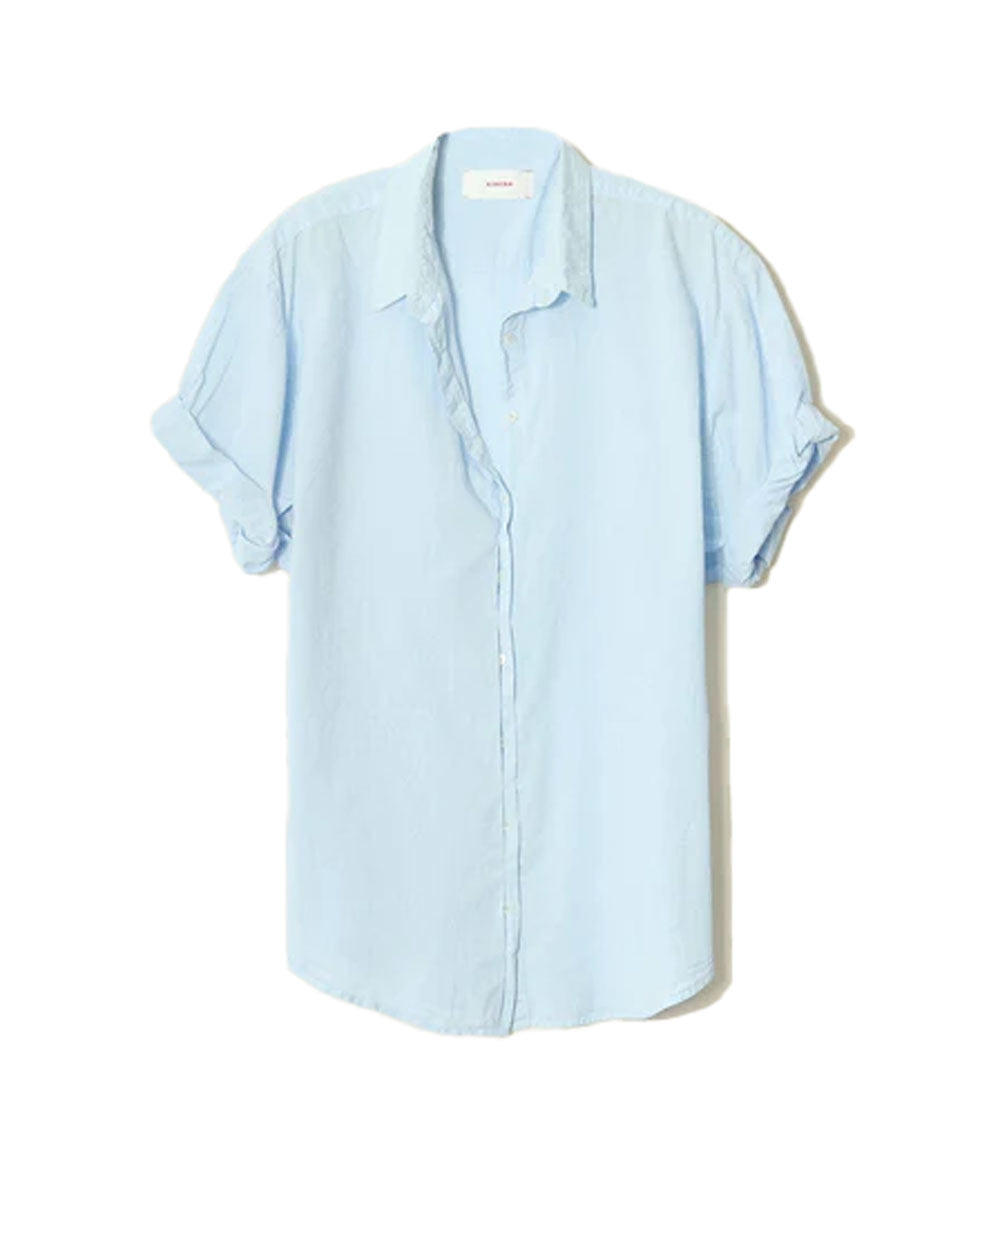 Bluebird Channing Shirt